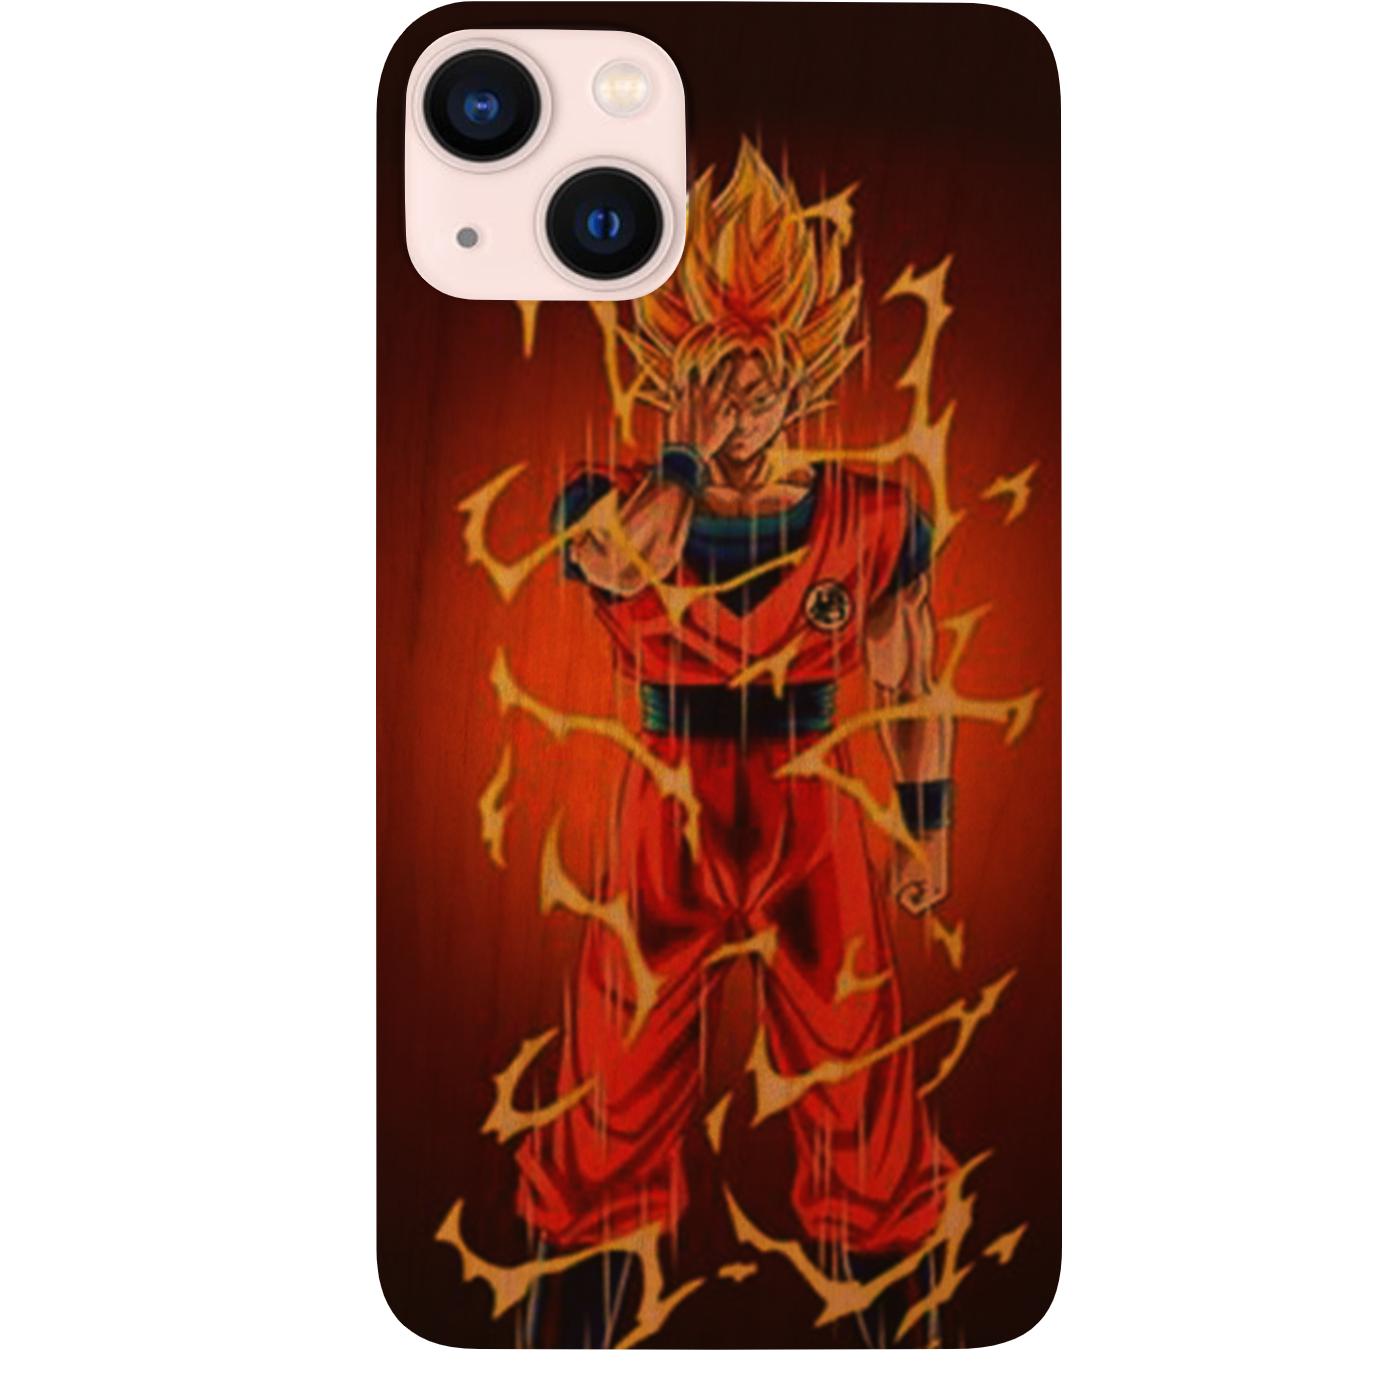 Anime Naruto Kakashi LED Phone Case For iPhone – ANYLOL